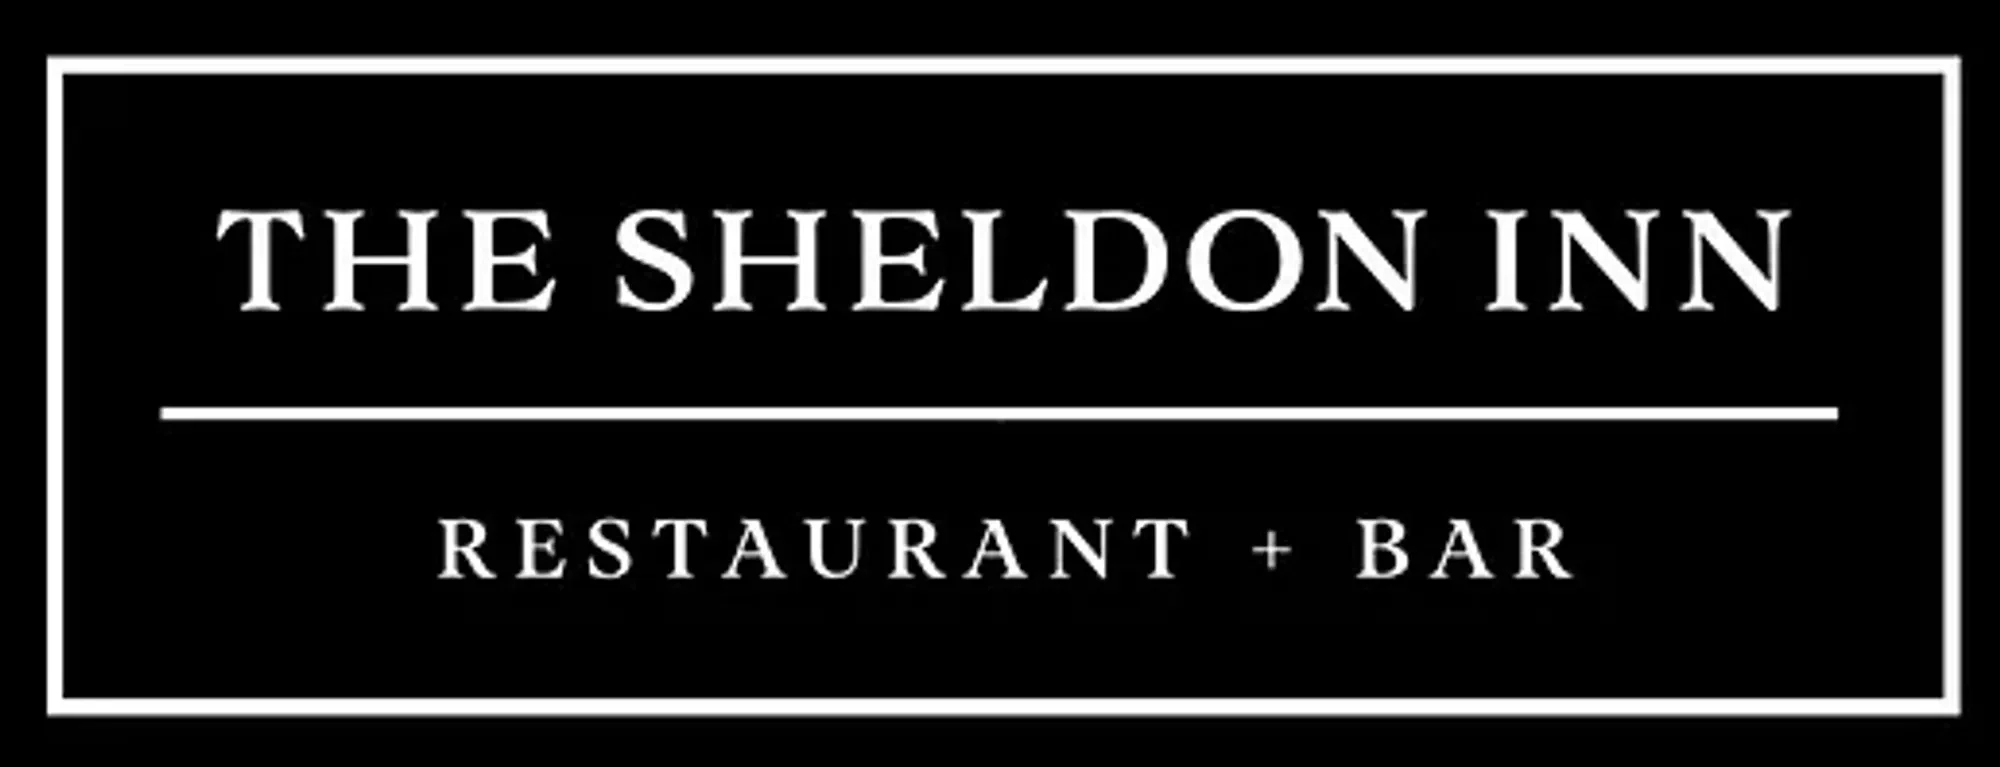 Sheldon Inn Restaurant & Bar